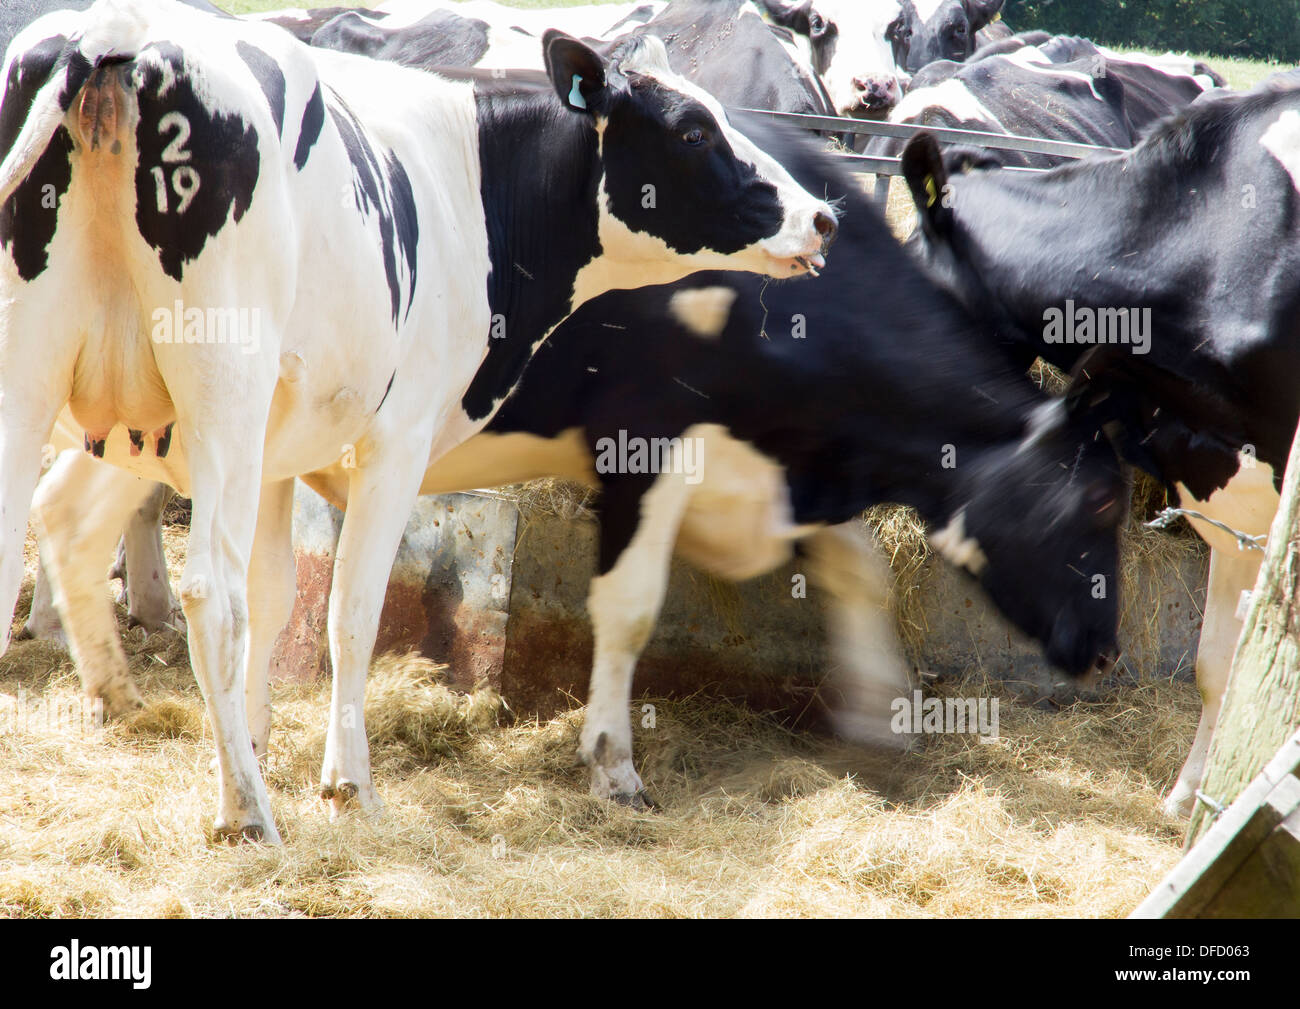 26 juillet 2013, près de Lewes, dans le Sussex, UK : fresian vaches mangeant de la paille d'un creux. L'un est encore flou, sur d'autres. Banque D'Images